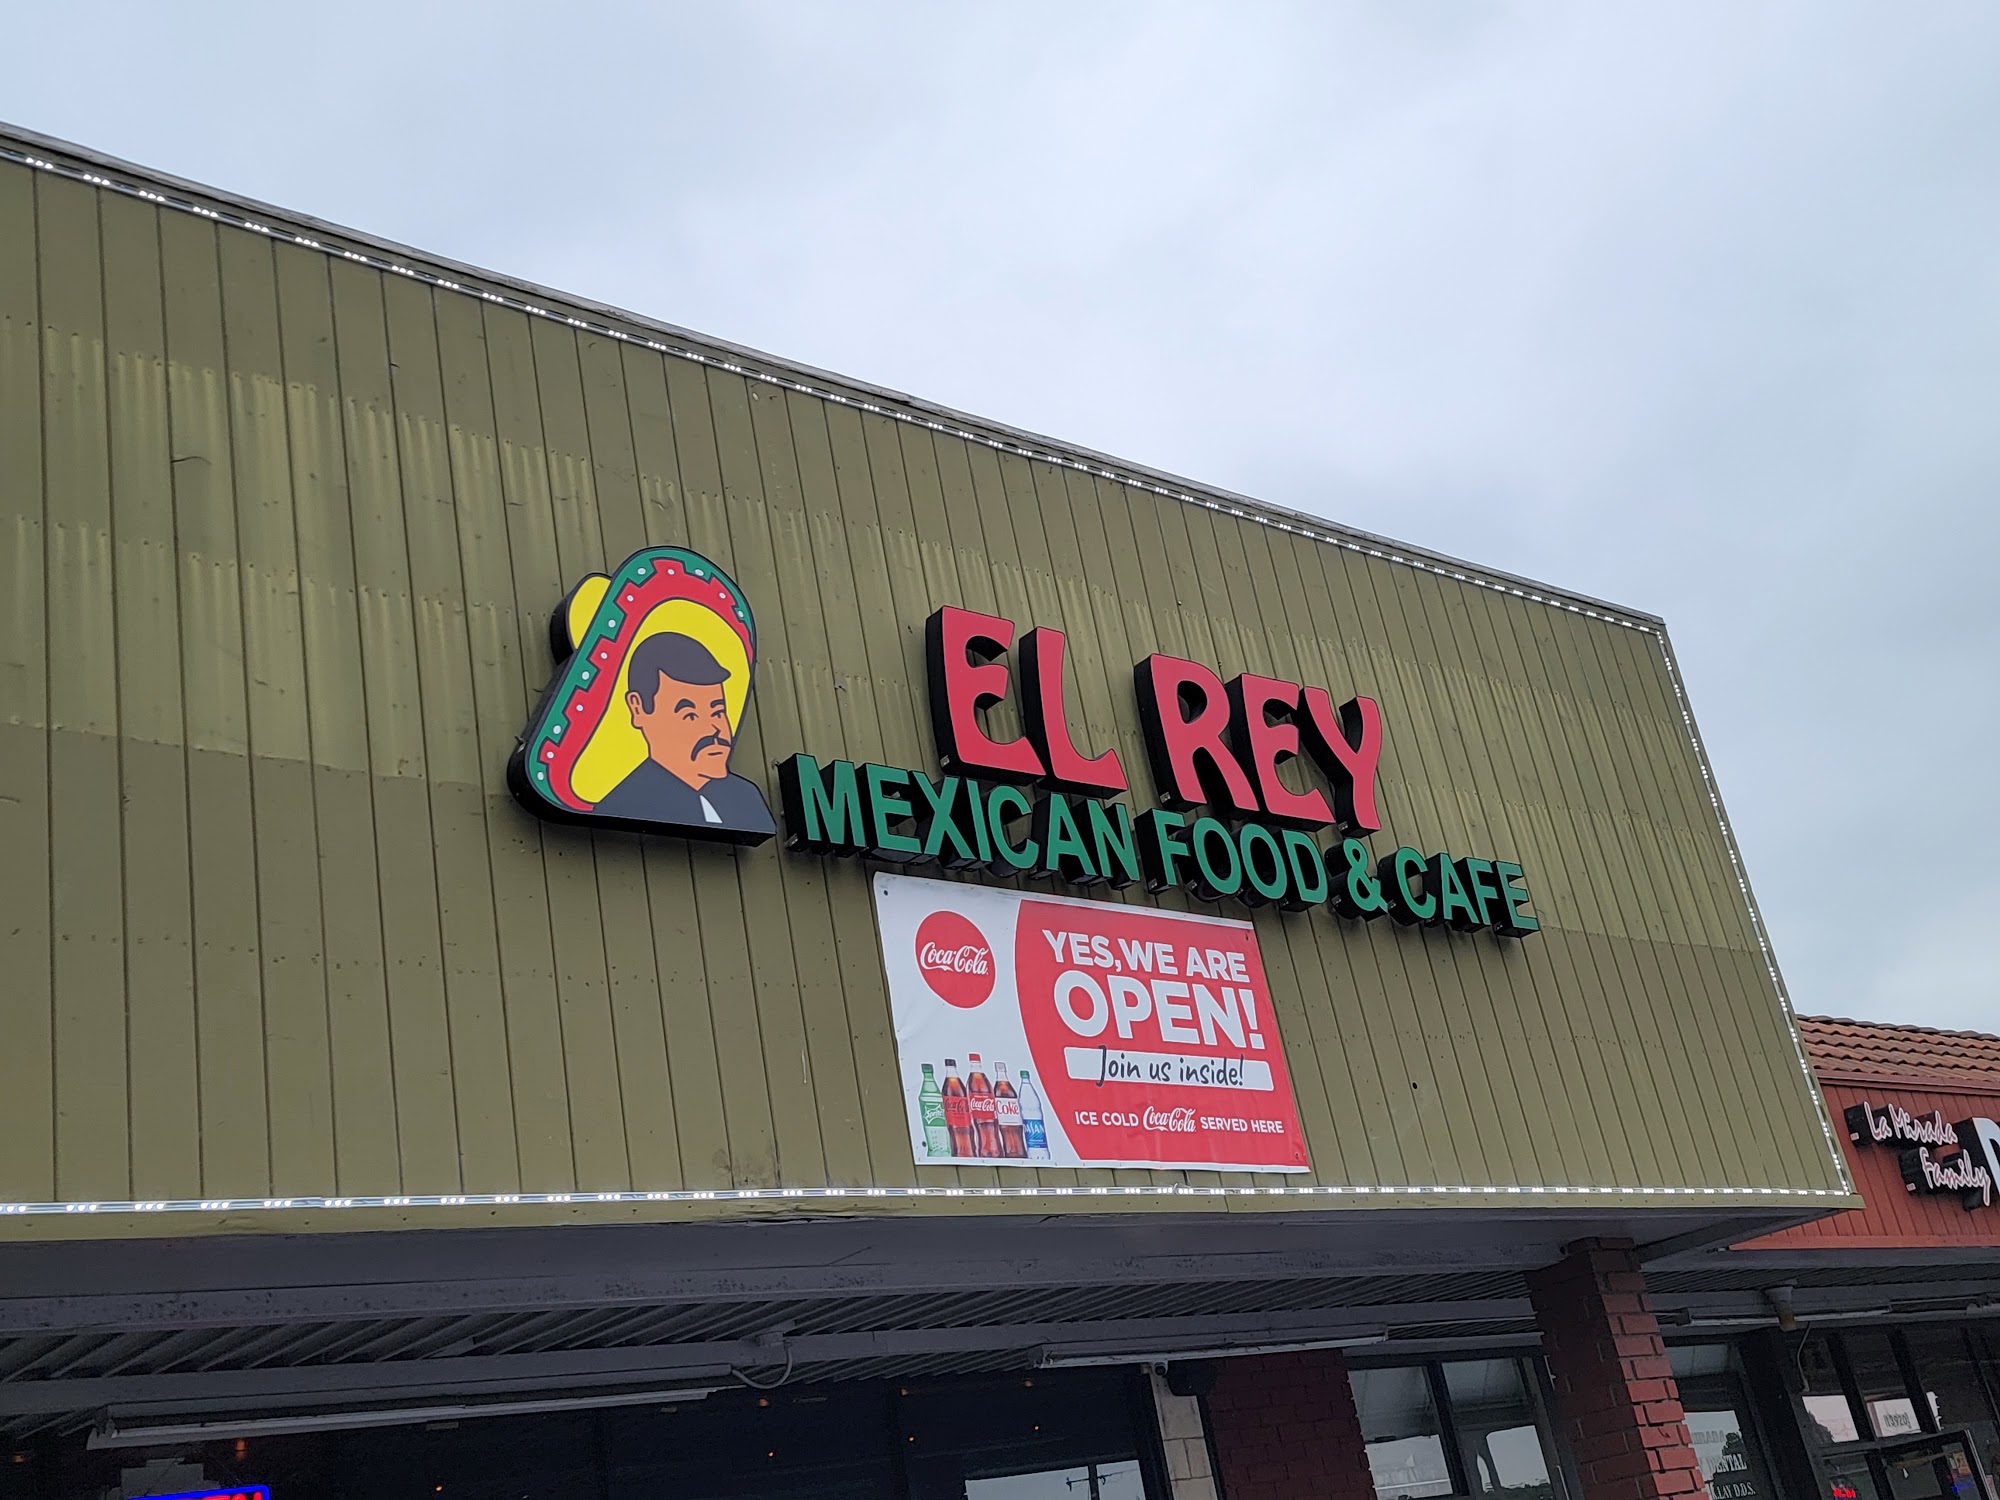 El Rey Mexican Food and Cafe